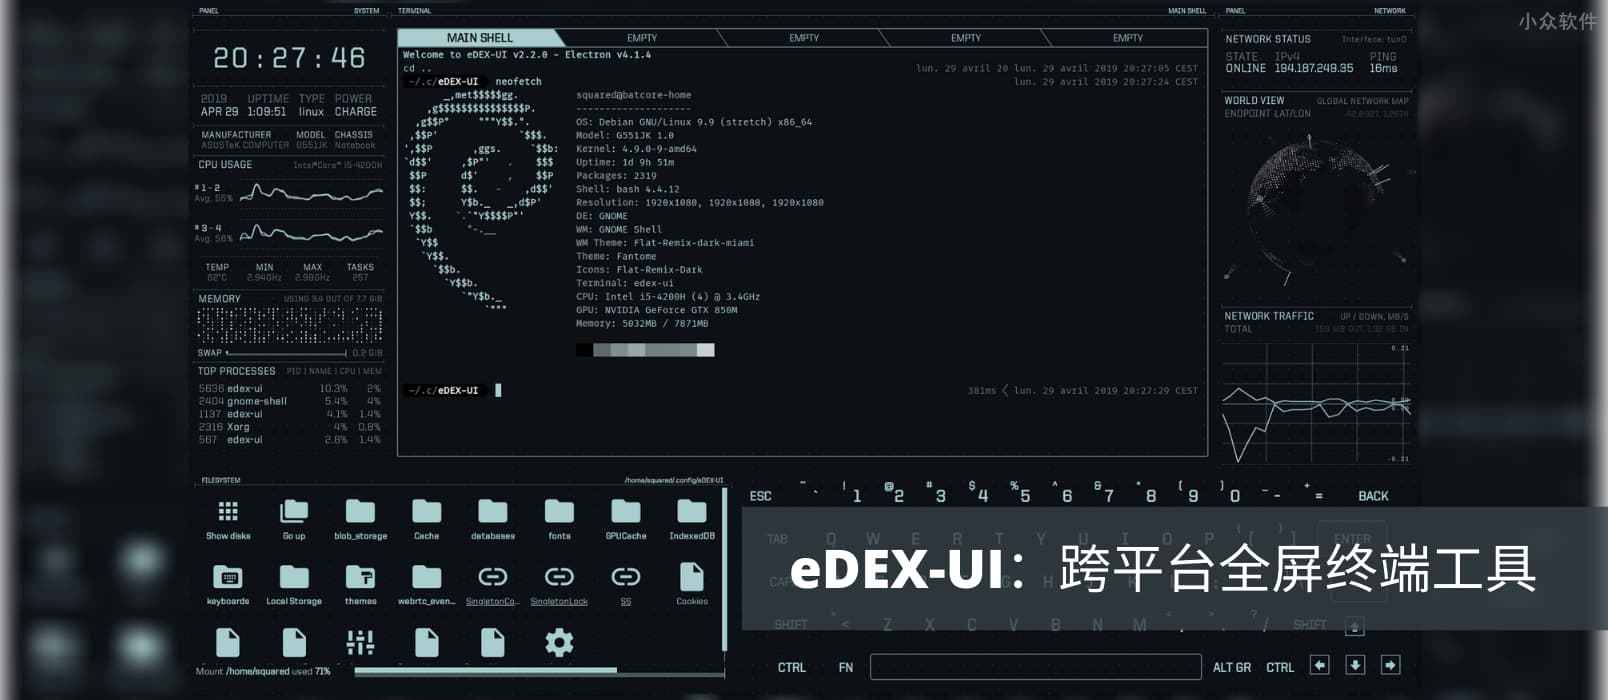 eDEX-UI - 炫酷跨平台全屏终端工具，可直接拿去拍电影